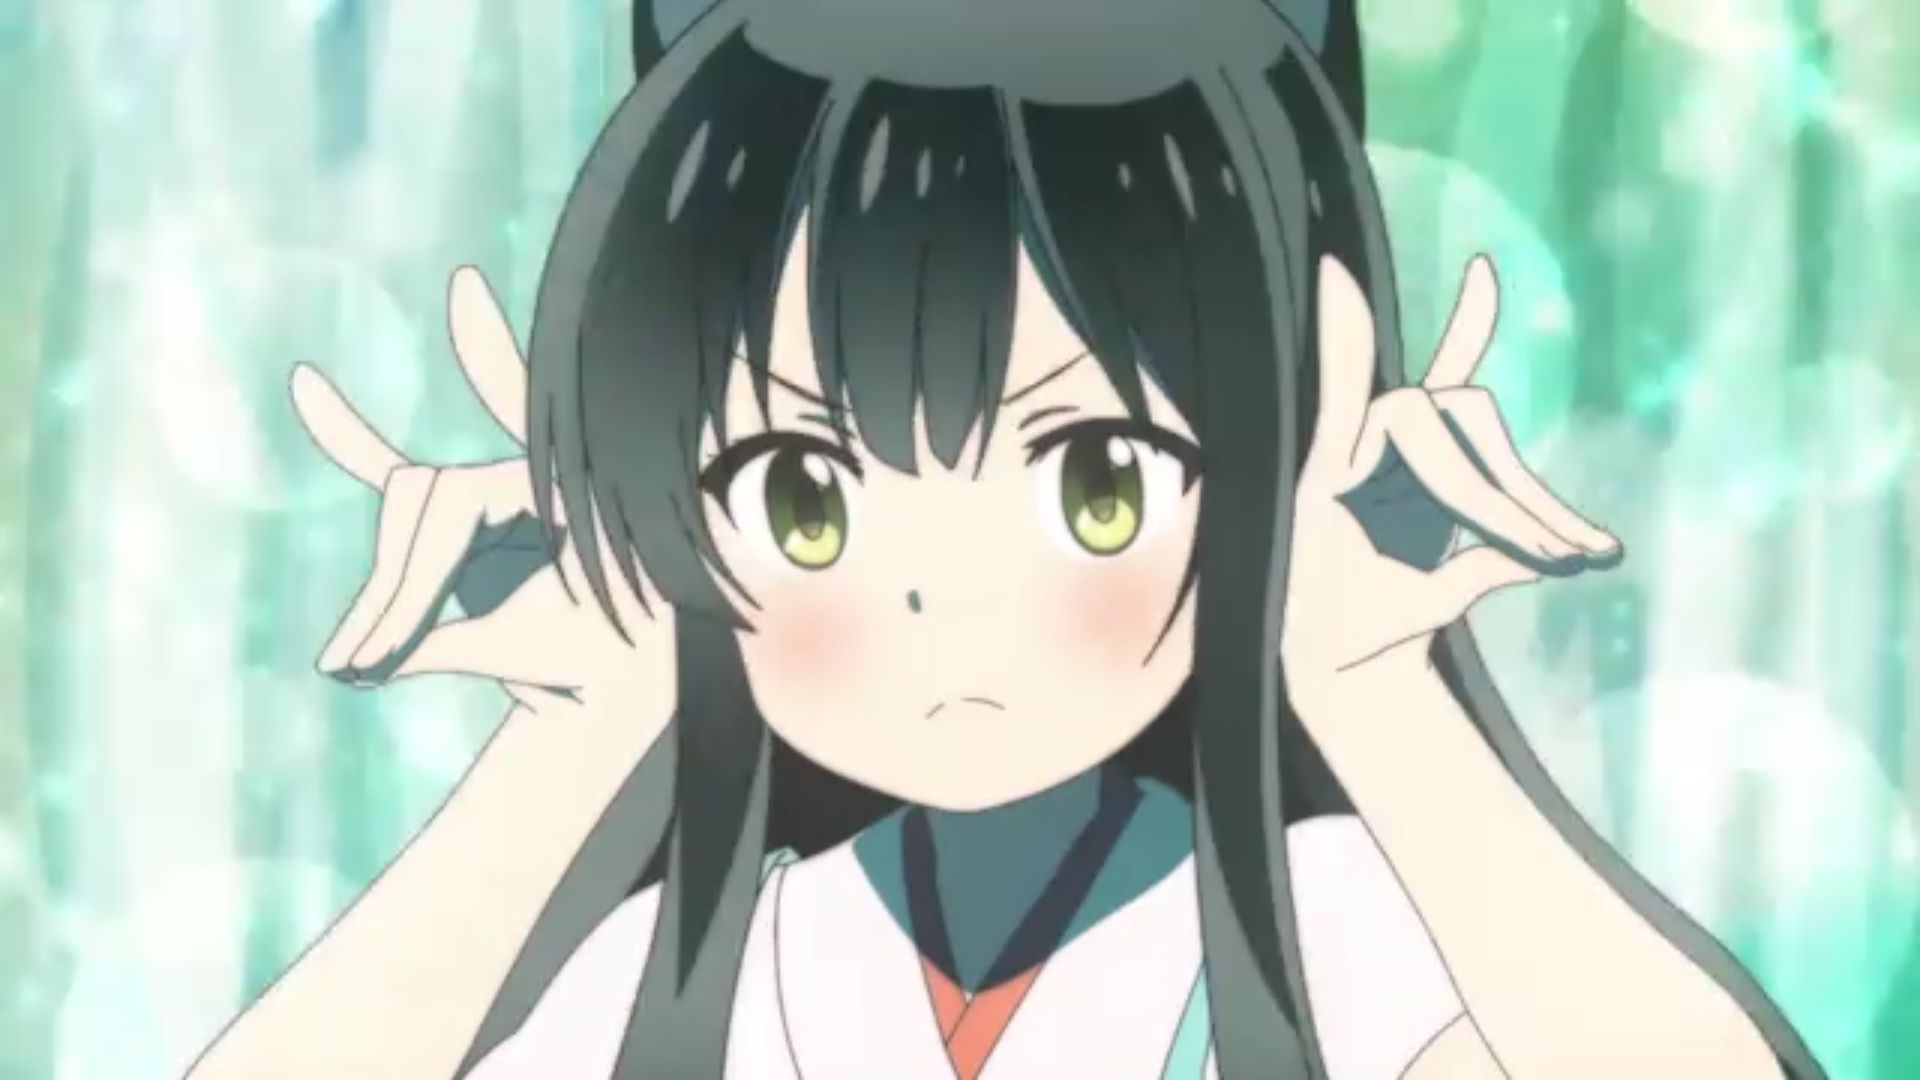 The cutest girl in Kirara anime is wwwwwwww 2